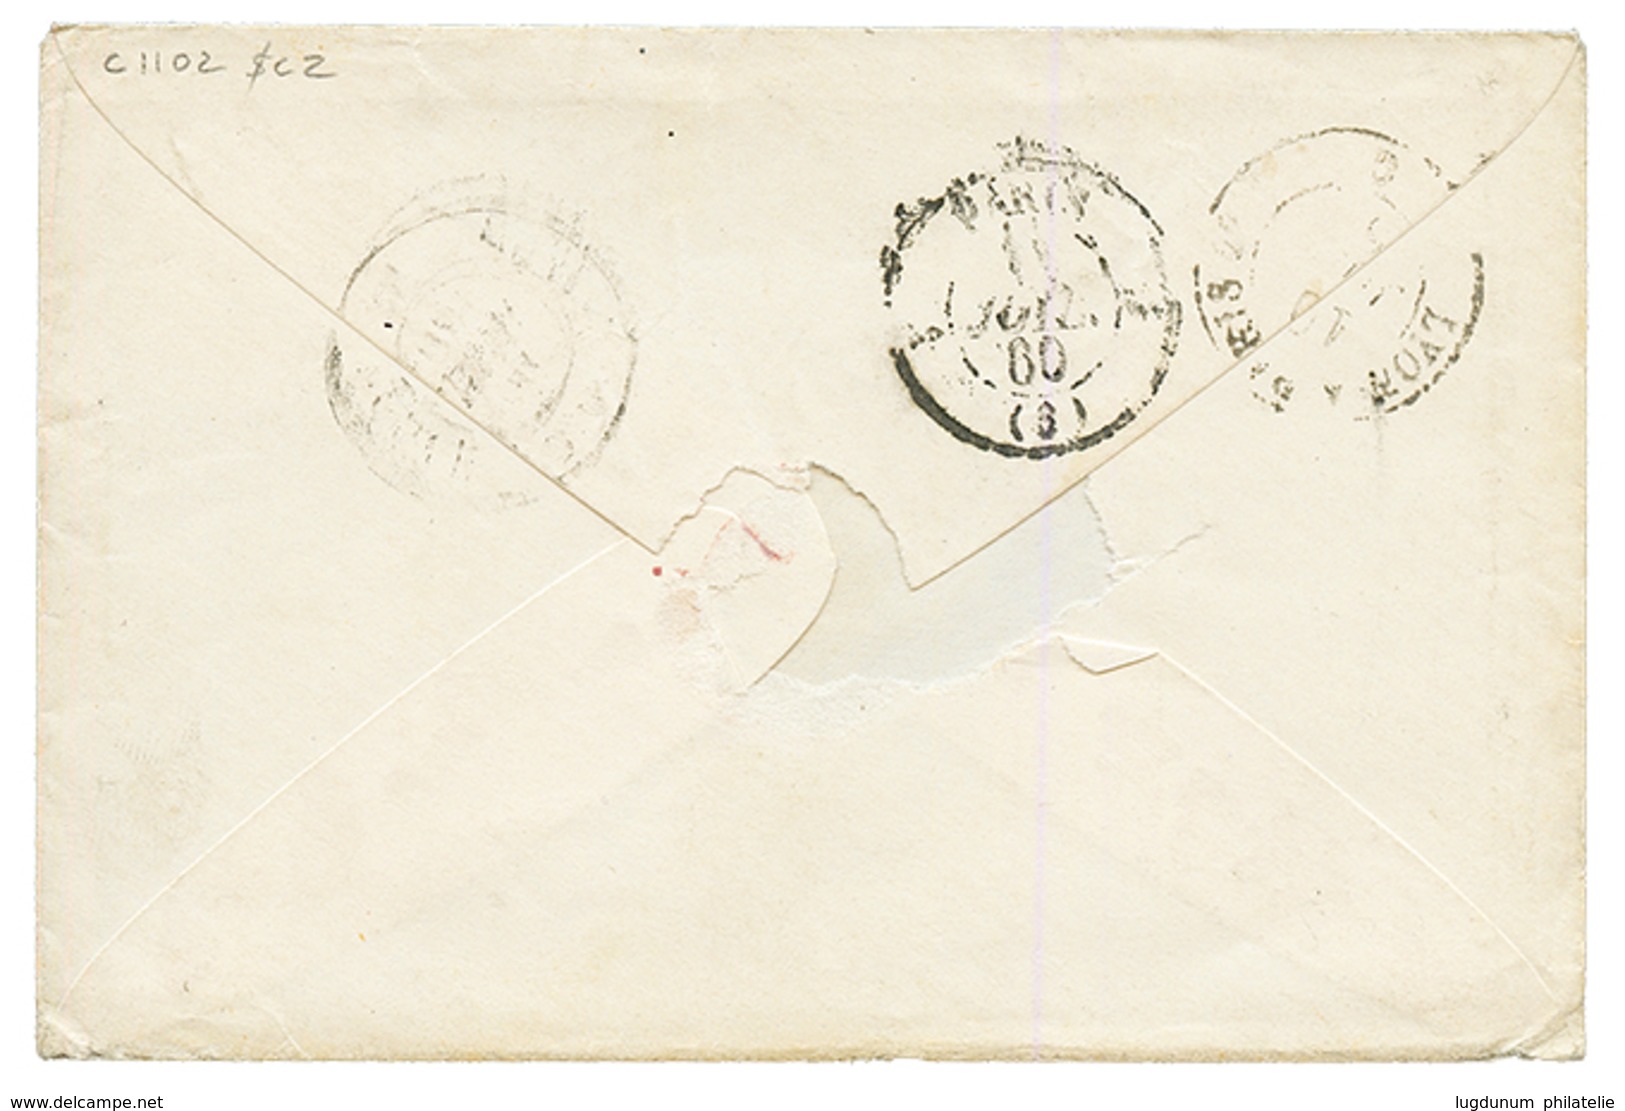 1860 FRANCE 20c(n°14) Obl. Cachet Sarde EVIAN Sur Enveloppe Pour PARIS. TB. - 1849-1876: Periodo Classico